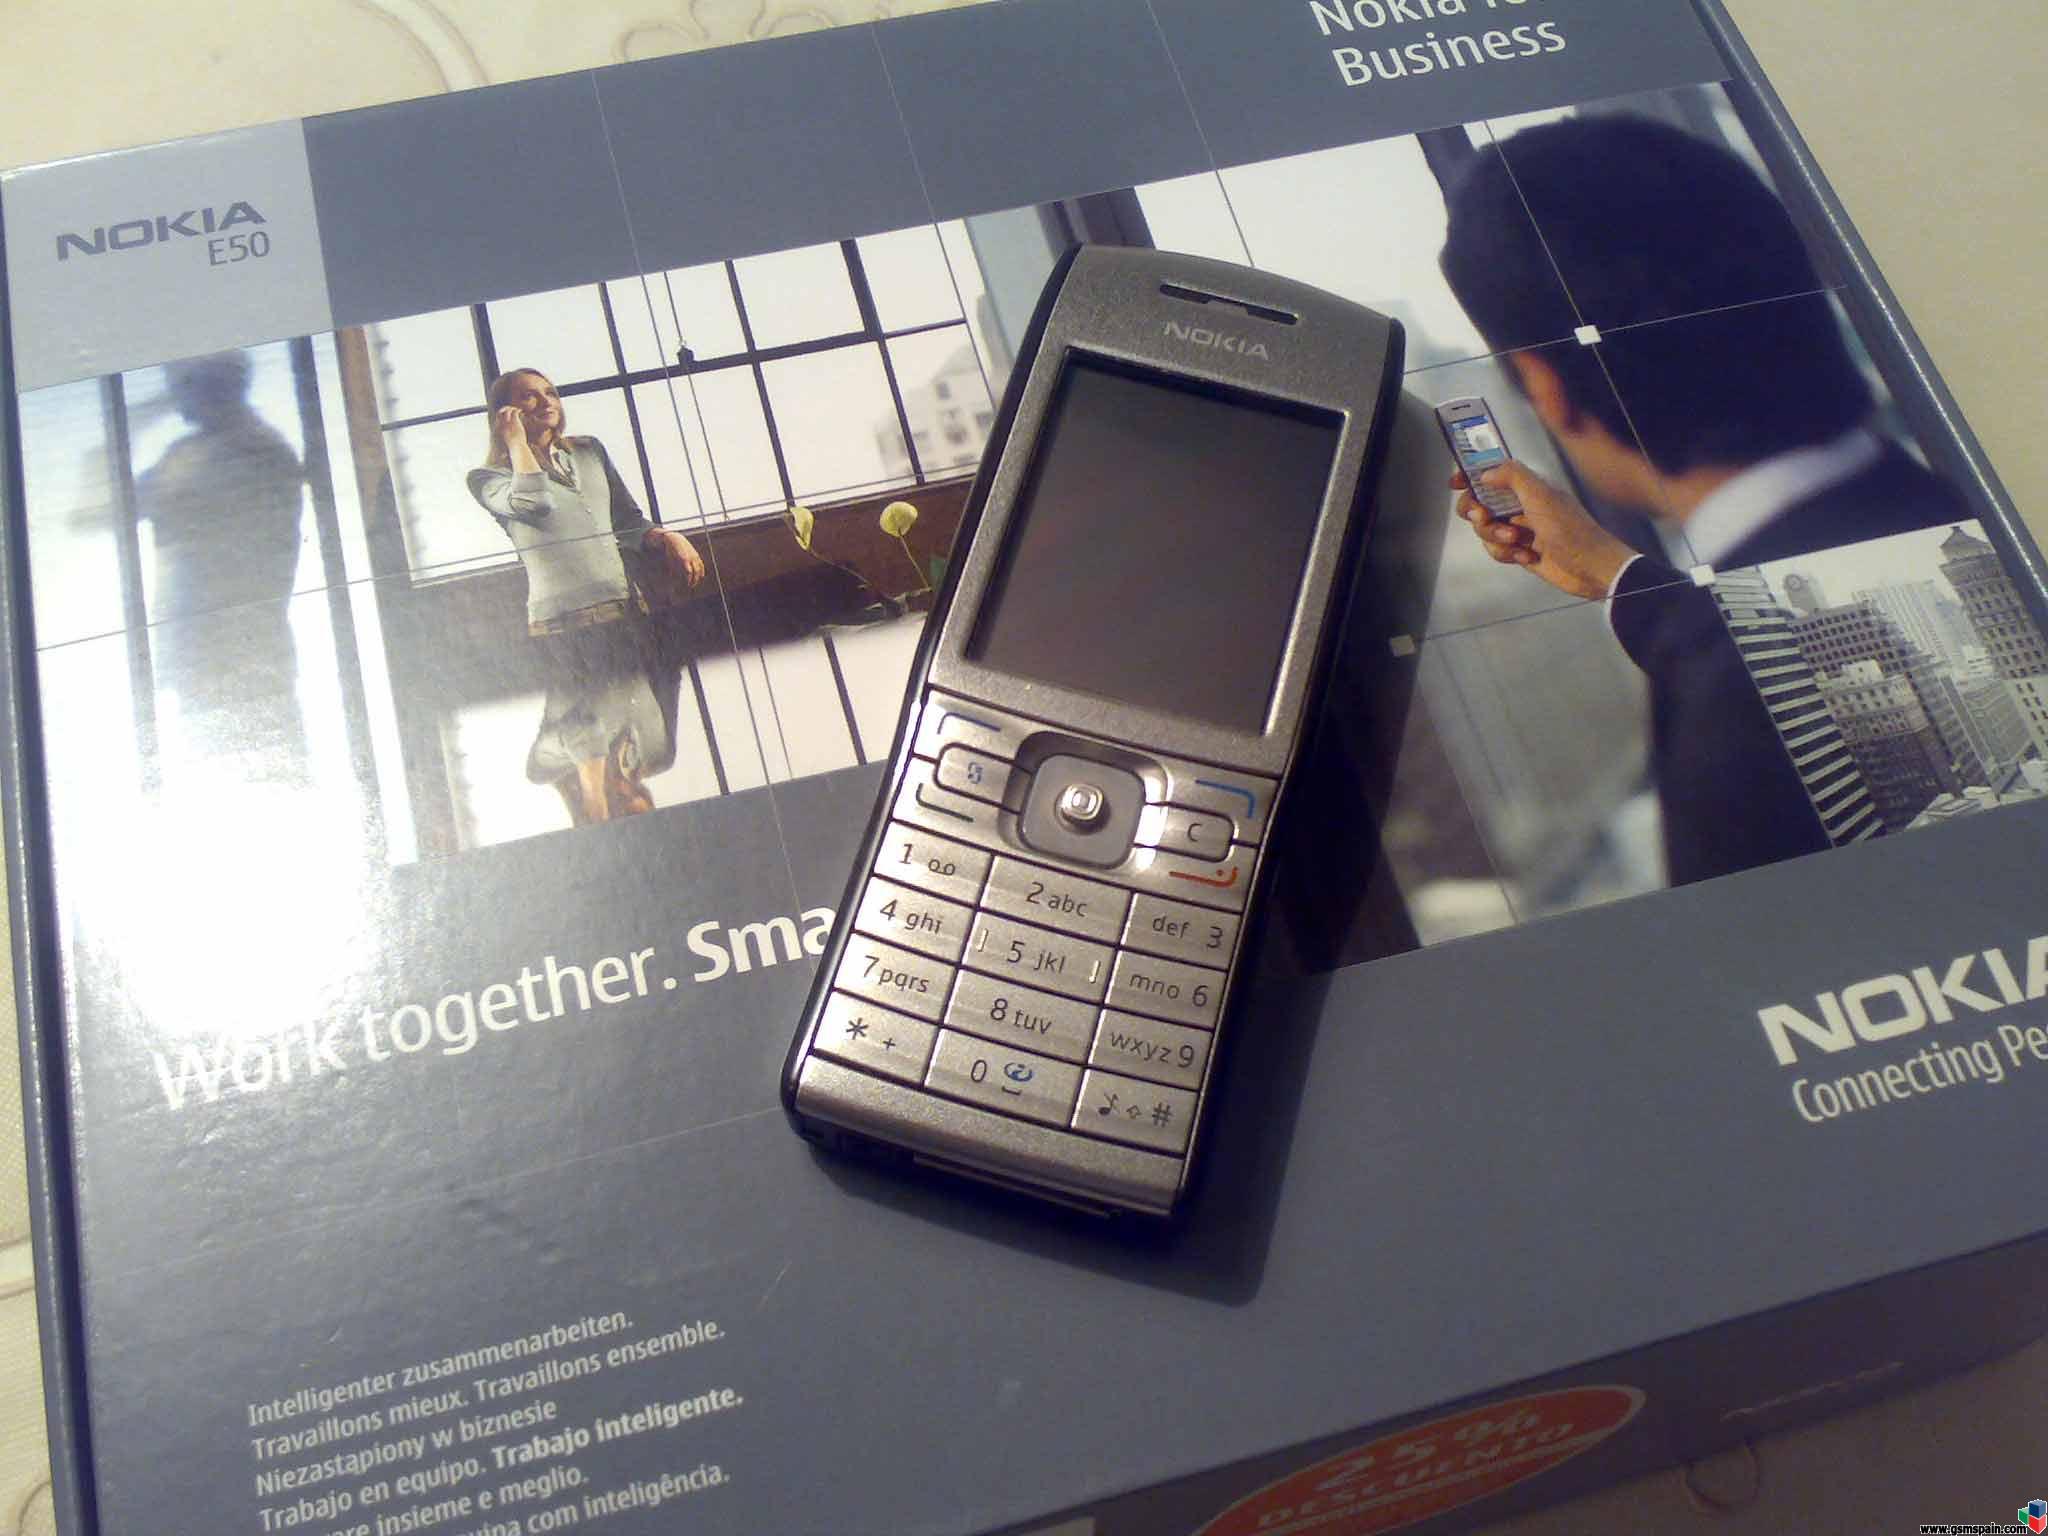 Vendo Nokia E50 libre de origen con camara por 170